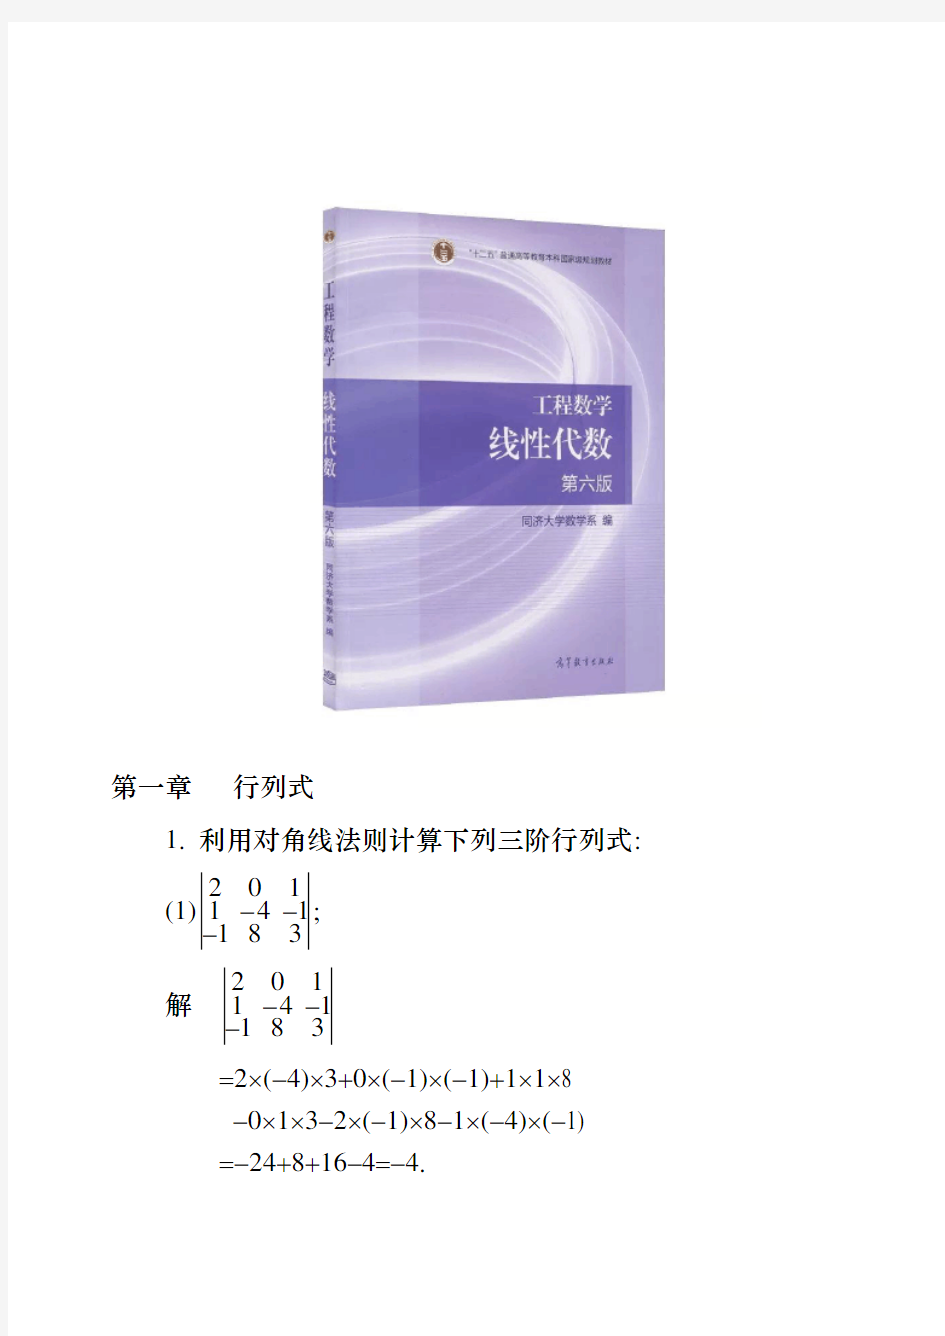 工程数学线性代数(同济大学第六版)课后习题